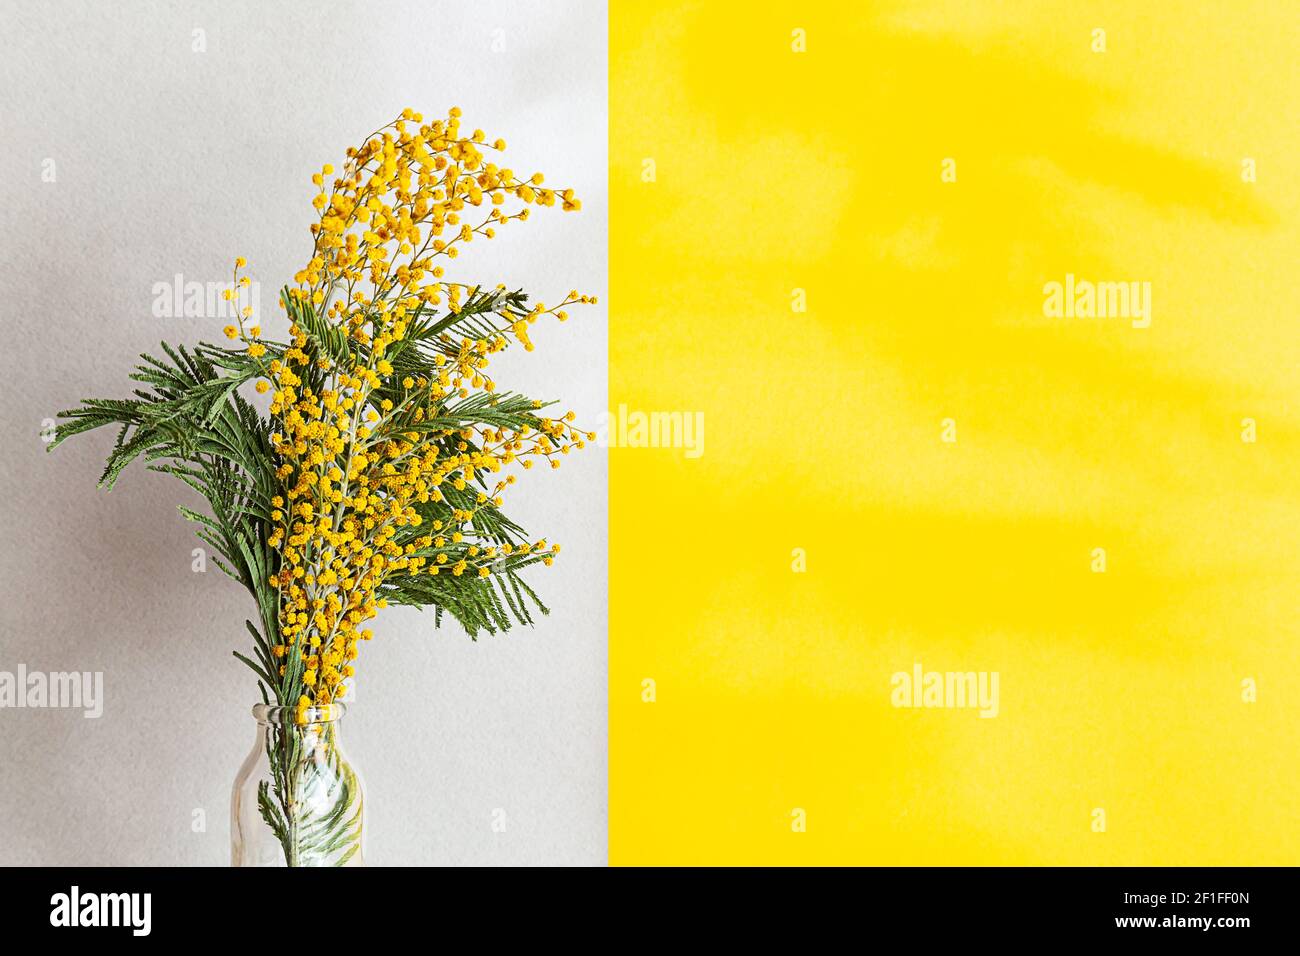 Un bouquet de fleurs mimosa dans un vase en verre sur fond gris clair. Composition de ressort avec des ombres intéressantes, espace de copie. Banque D'Images